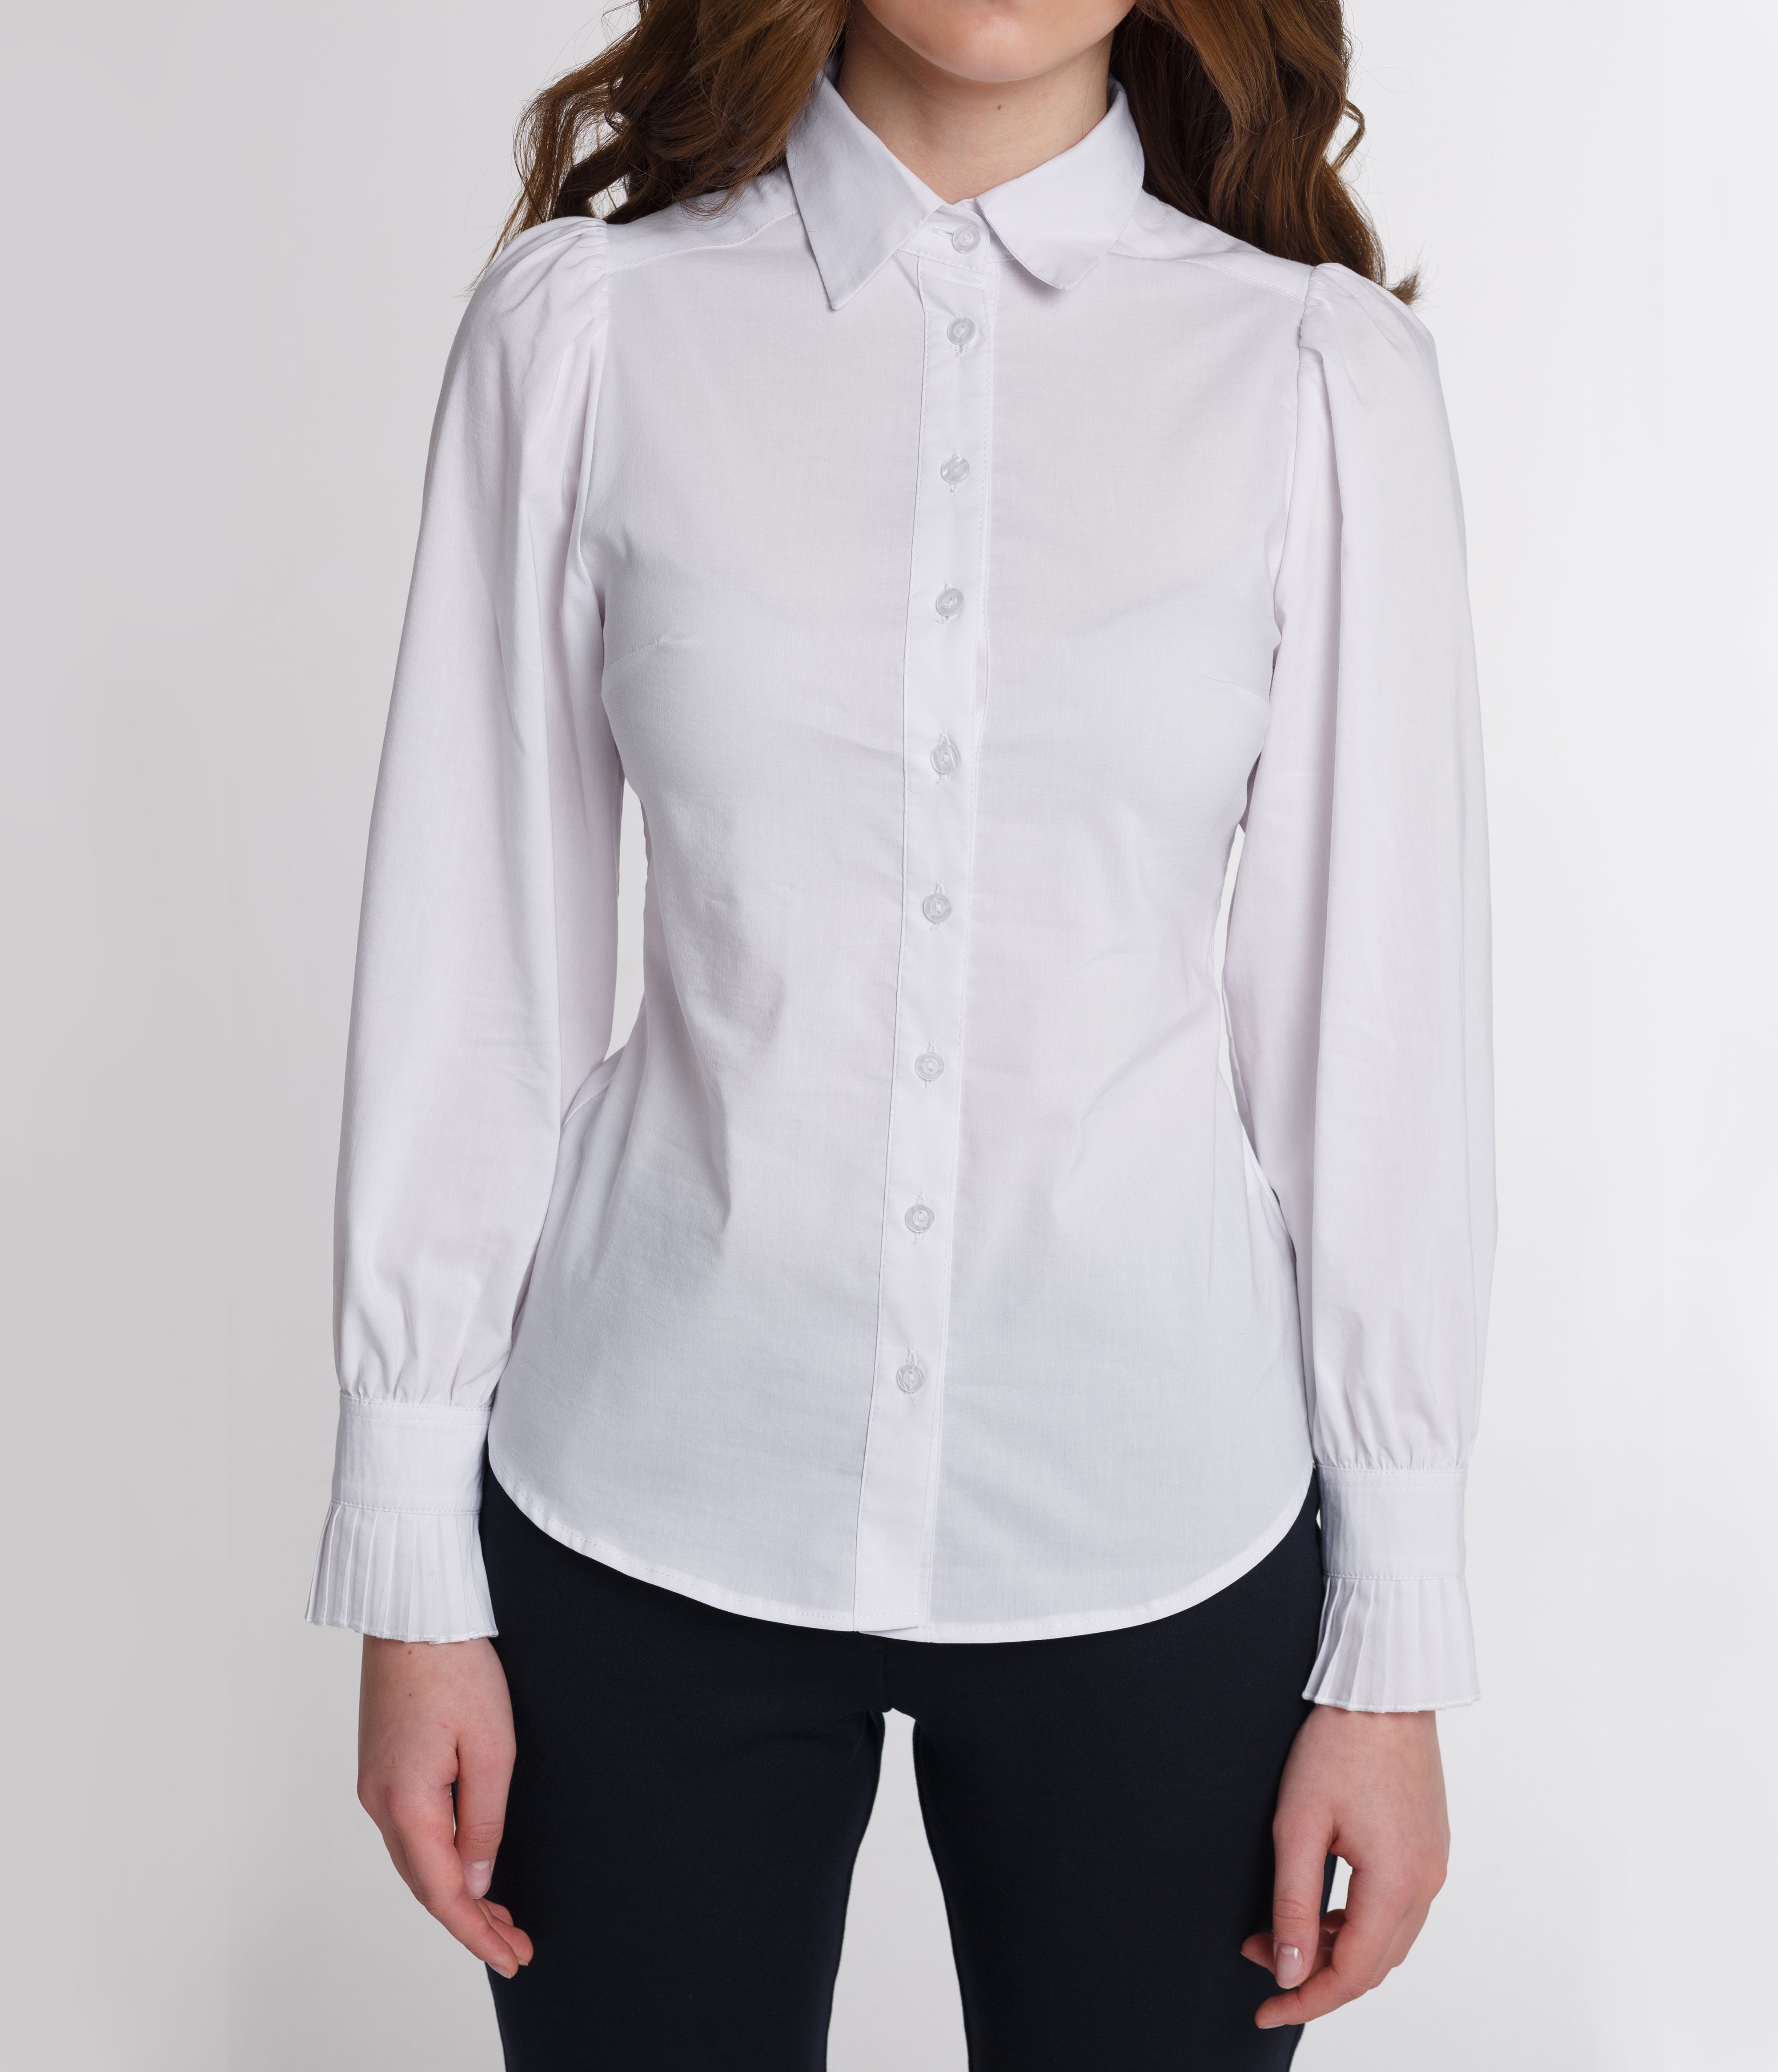 Классичсекая блузка с объёмными рукавами